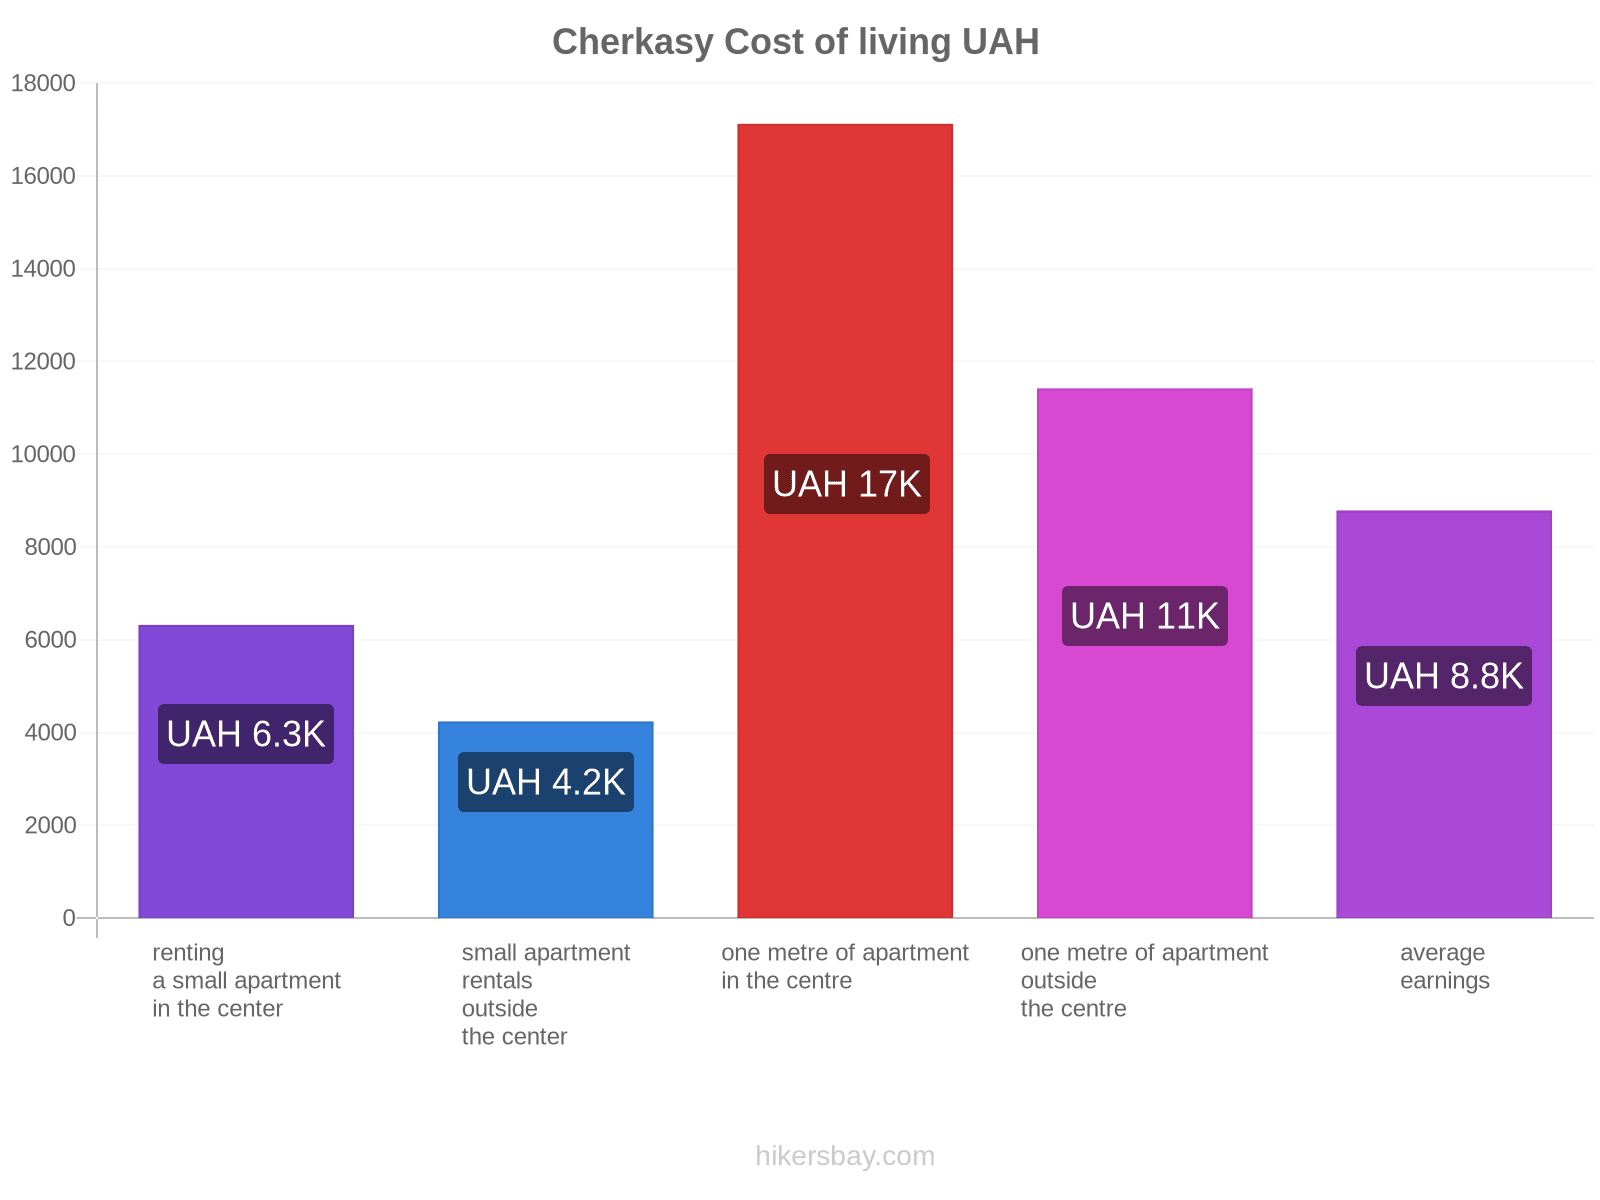 Cherkasy cost of living hikersbay.com